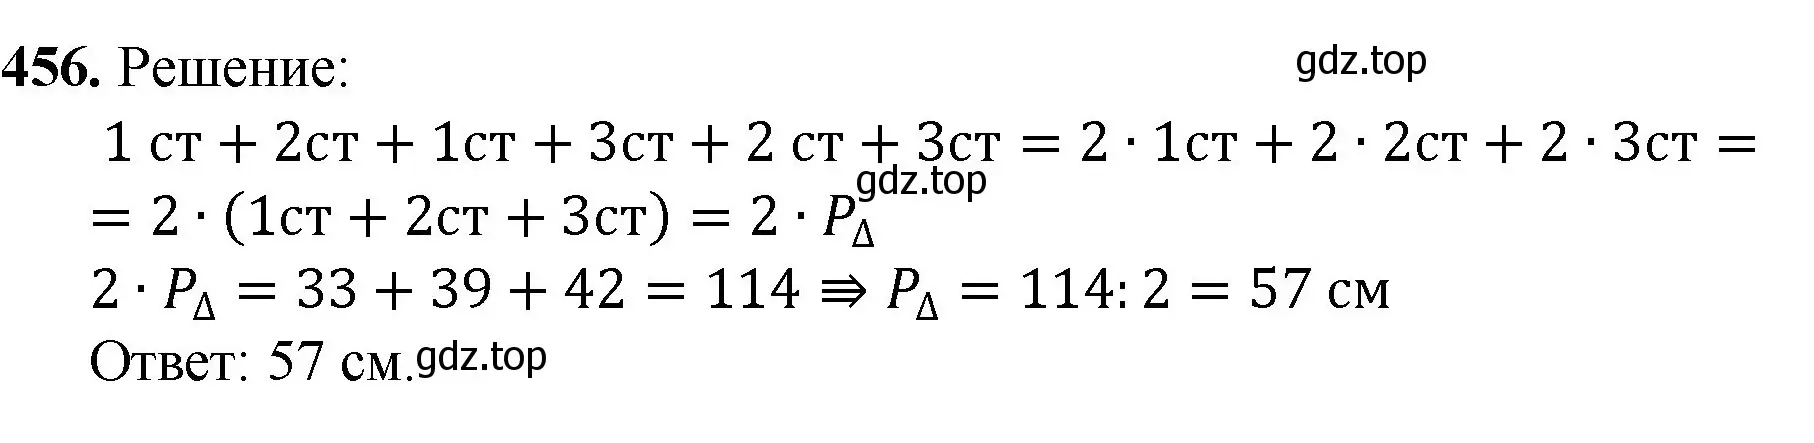 Решение номер 456 (страница 118) гдз по математике 5 класс Мерзляк, Полонский, учебник